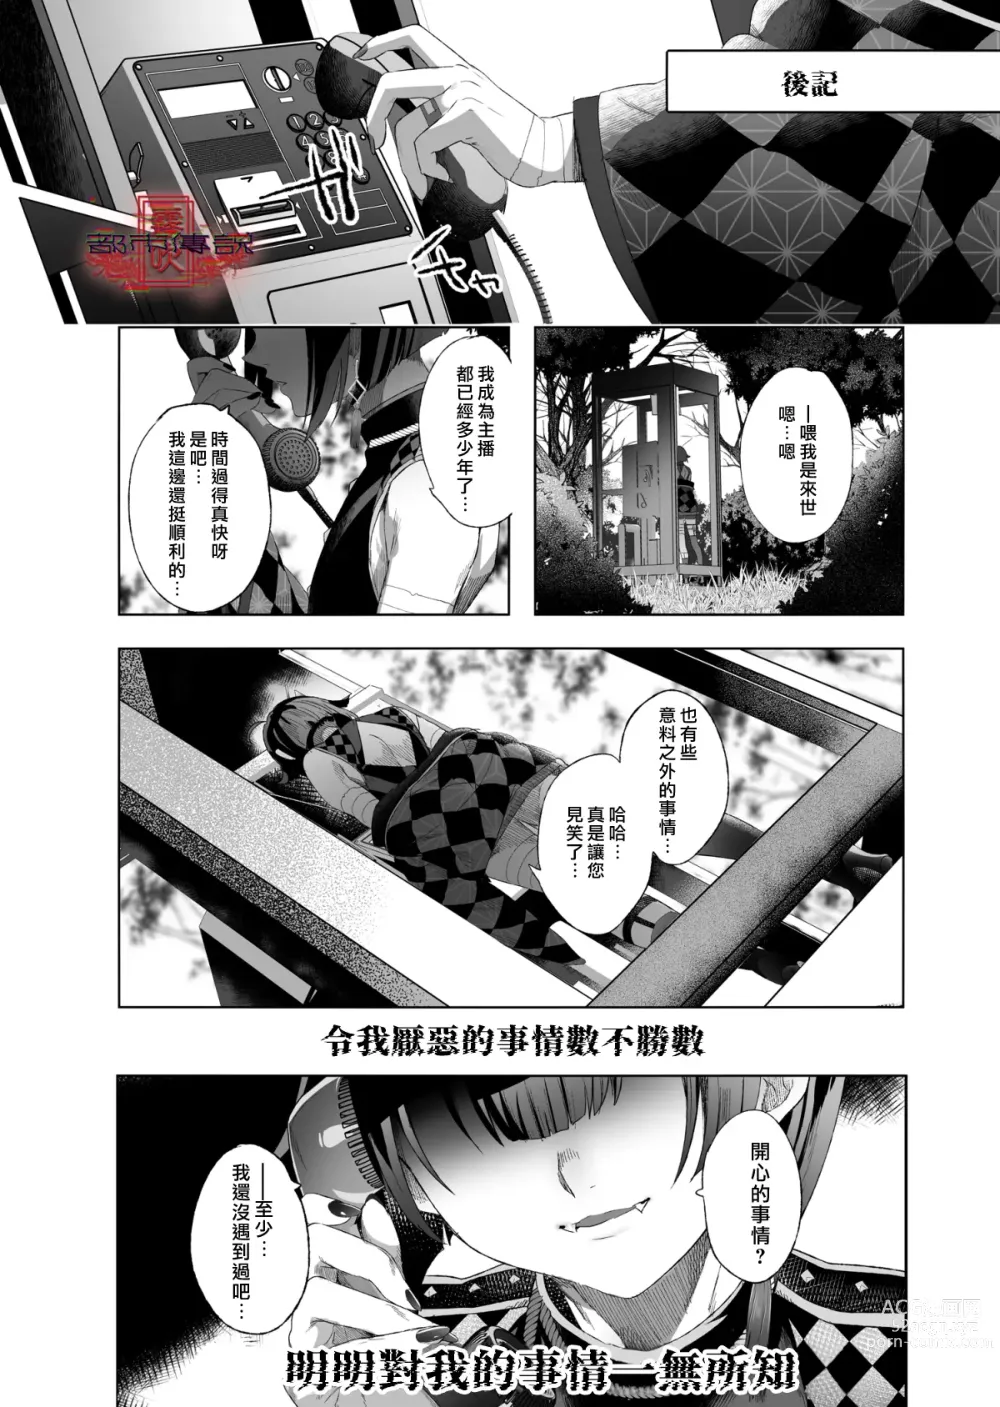 Page 114 of doujinshi Shounen Toshi Densetsu Shinoshima Raise Gendai Hen